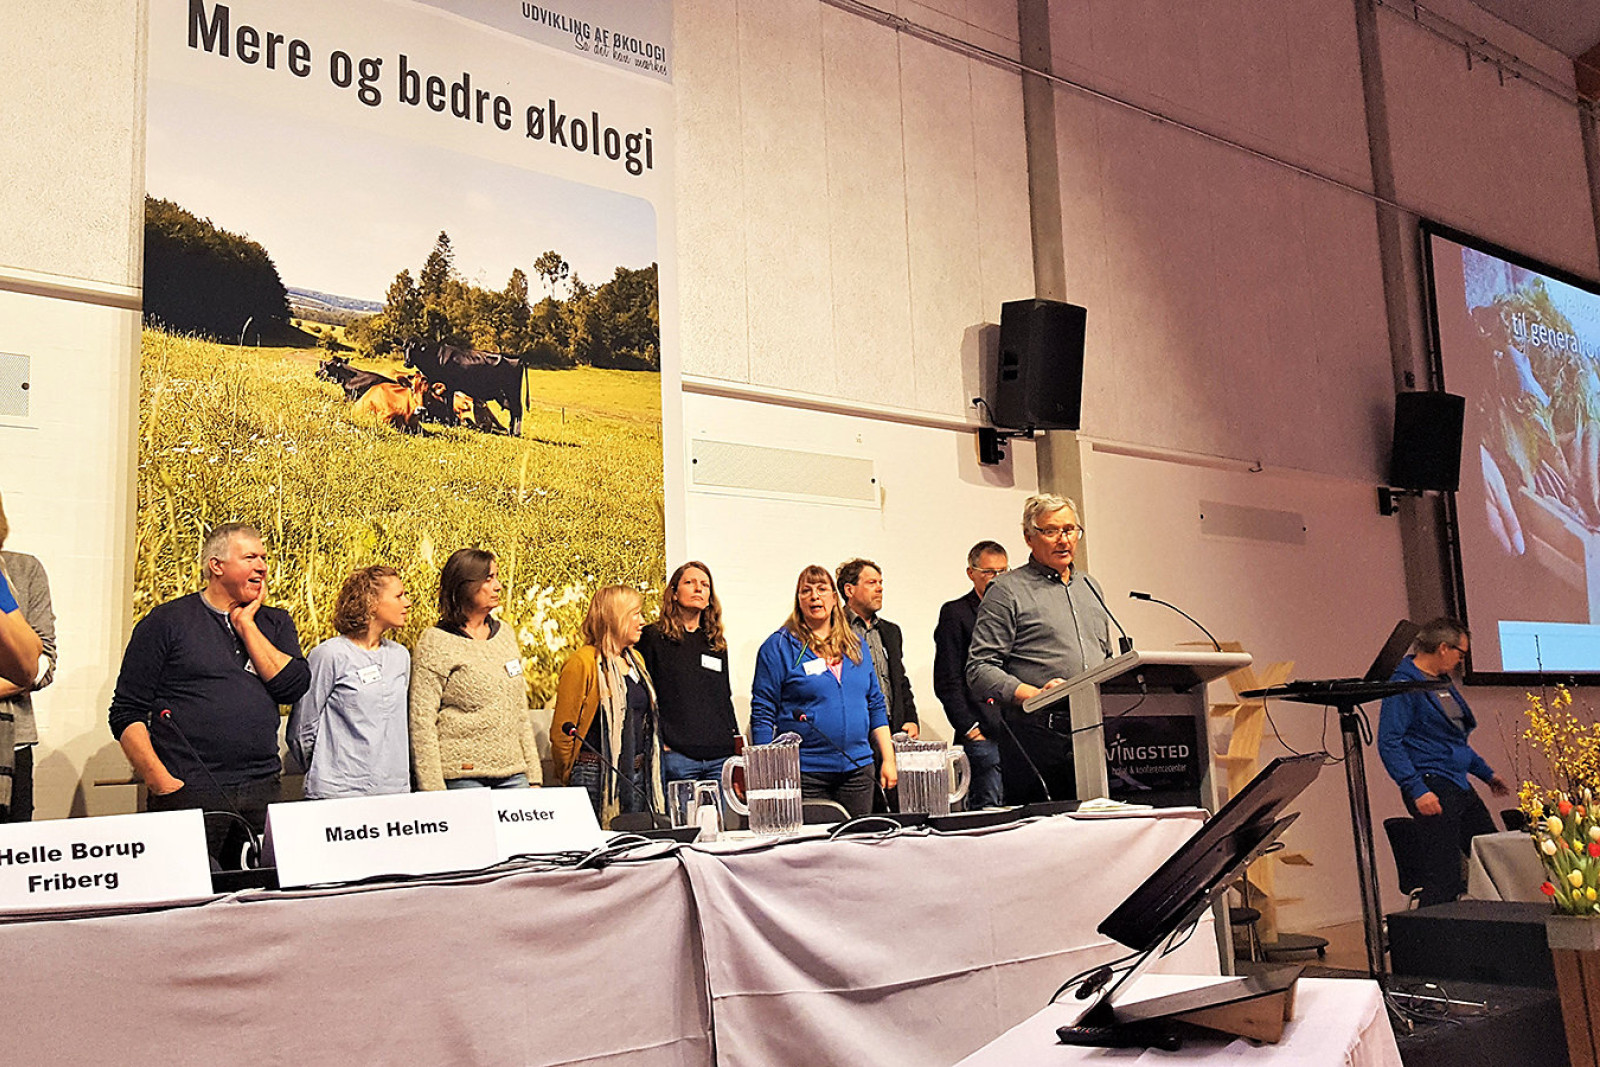 Bestyrelsesmedlemmer i ØL står på en række - foran dem står formand Per Kølster på talerstolen